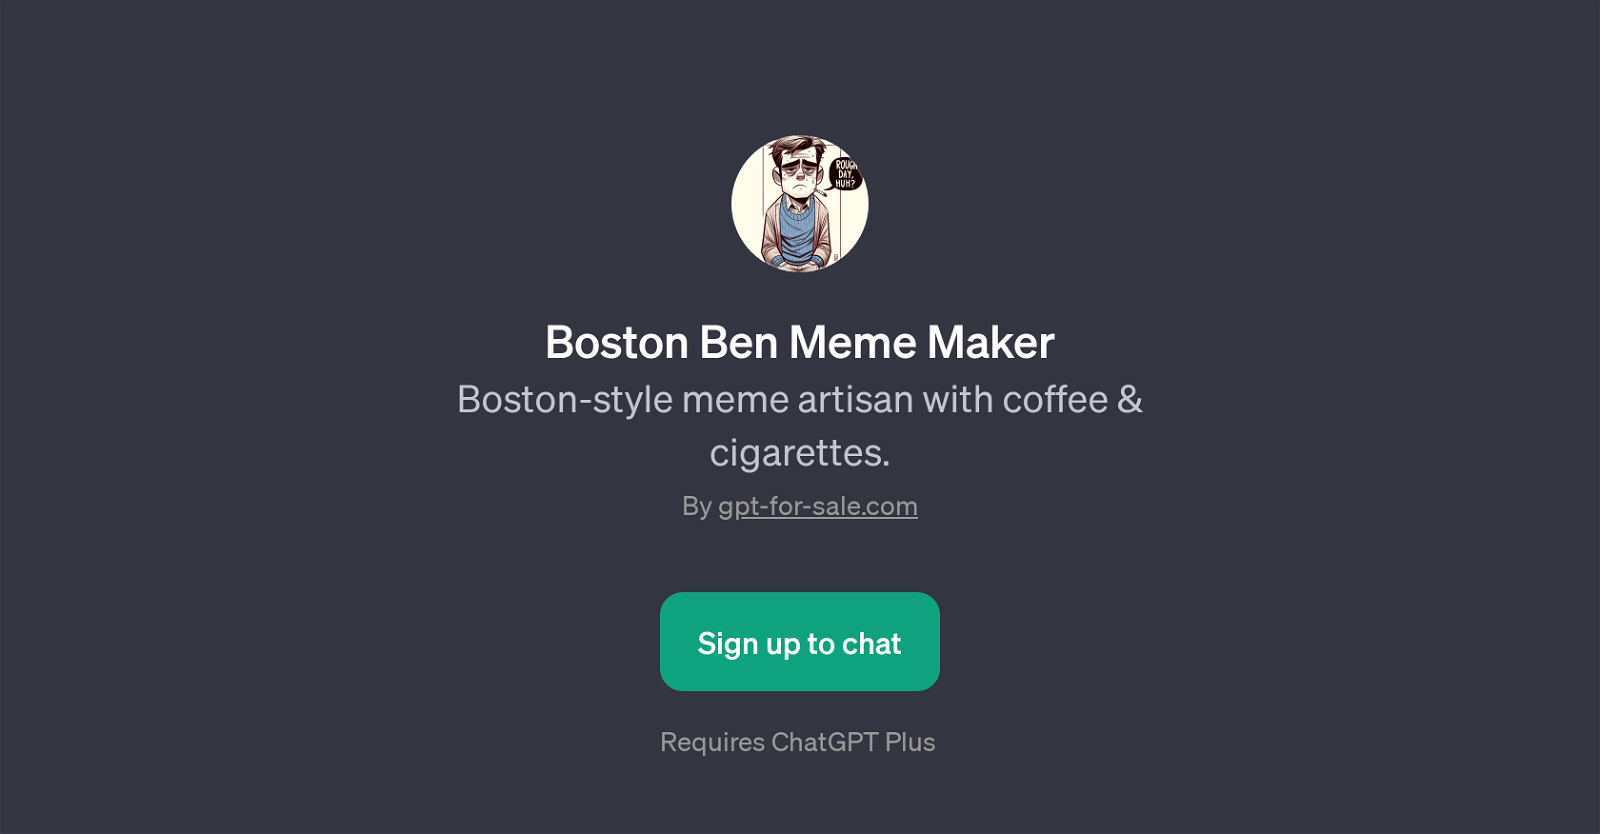 Boston Ben Meme Maker website